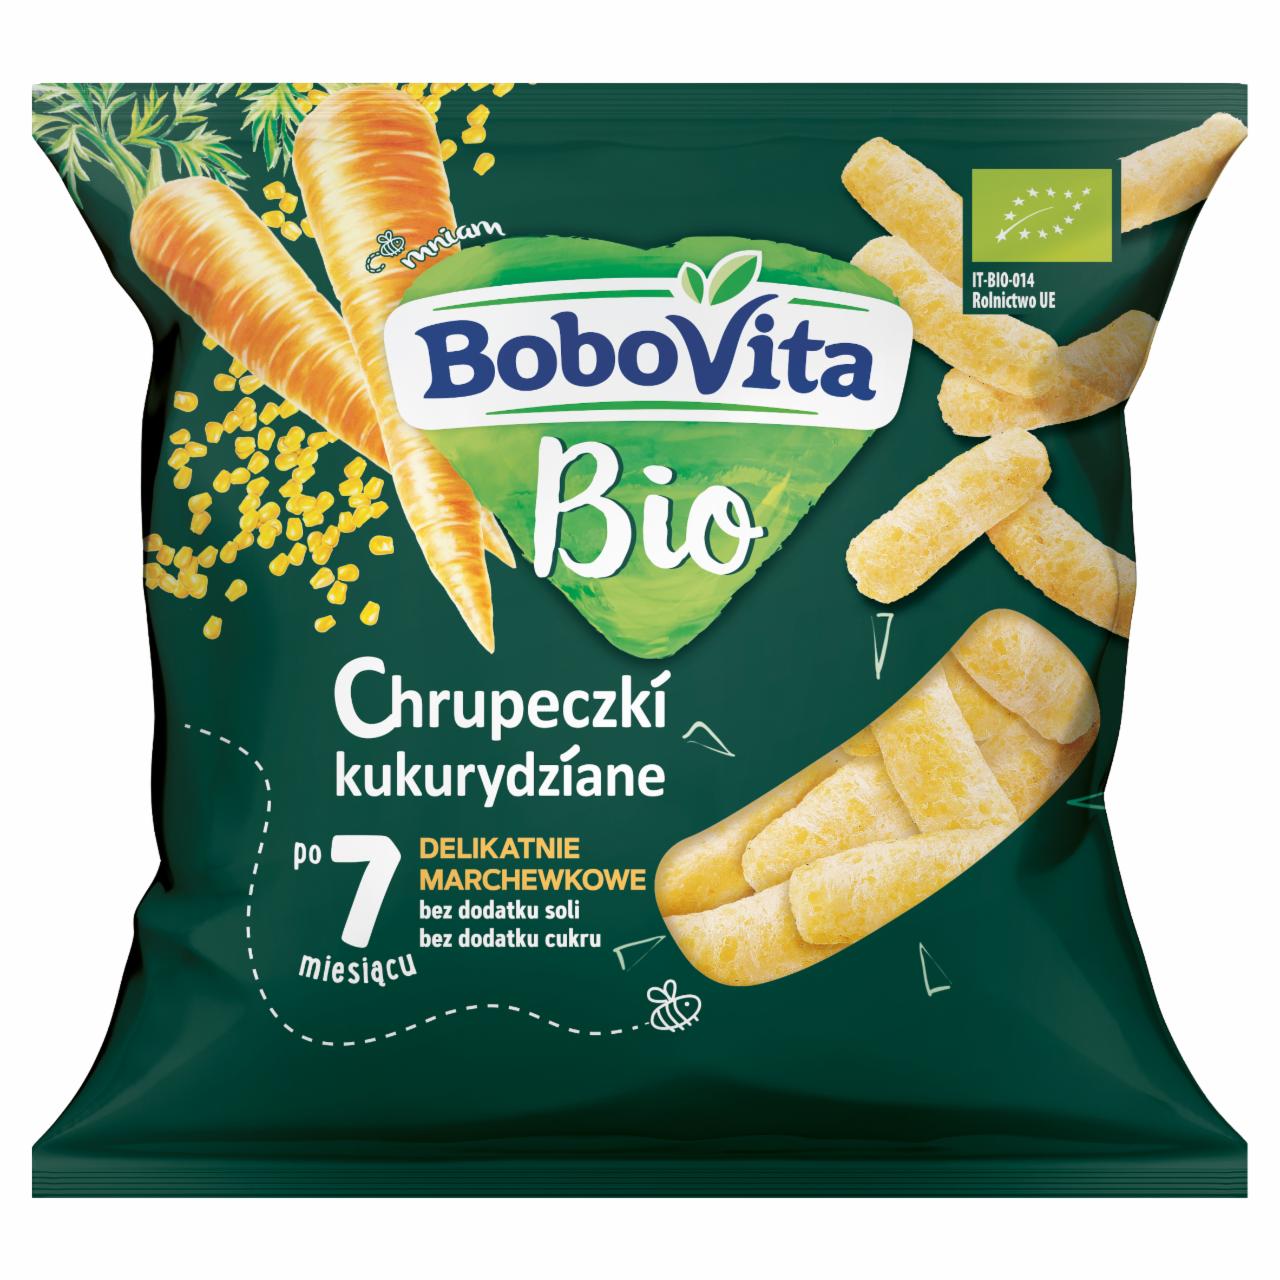 Zdjęcia - BoboVita Chrupeczki kukurydziane bio delikatnie marchewkowe po 7 miesiącu 20 g